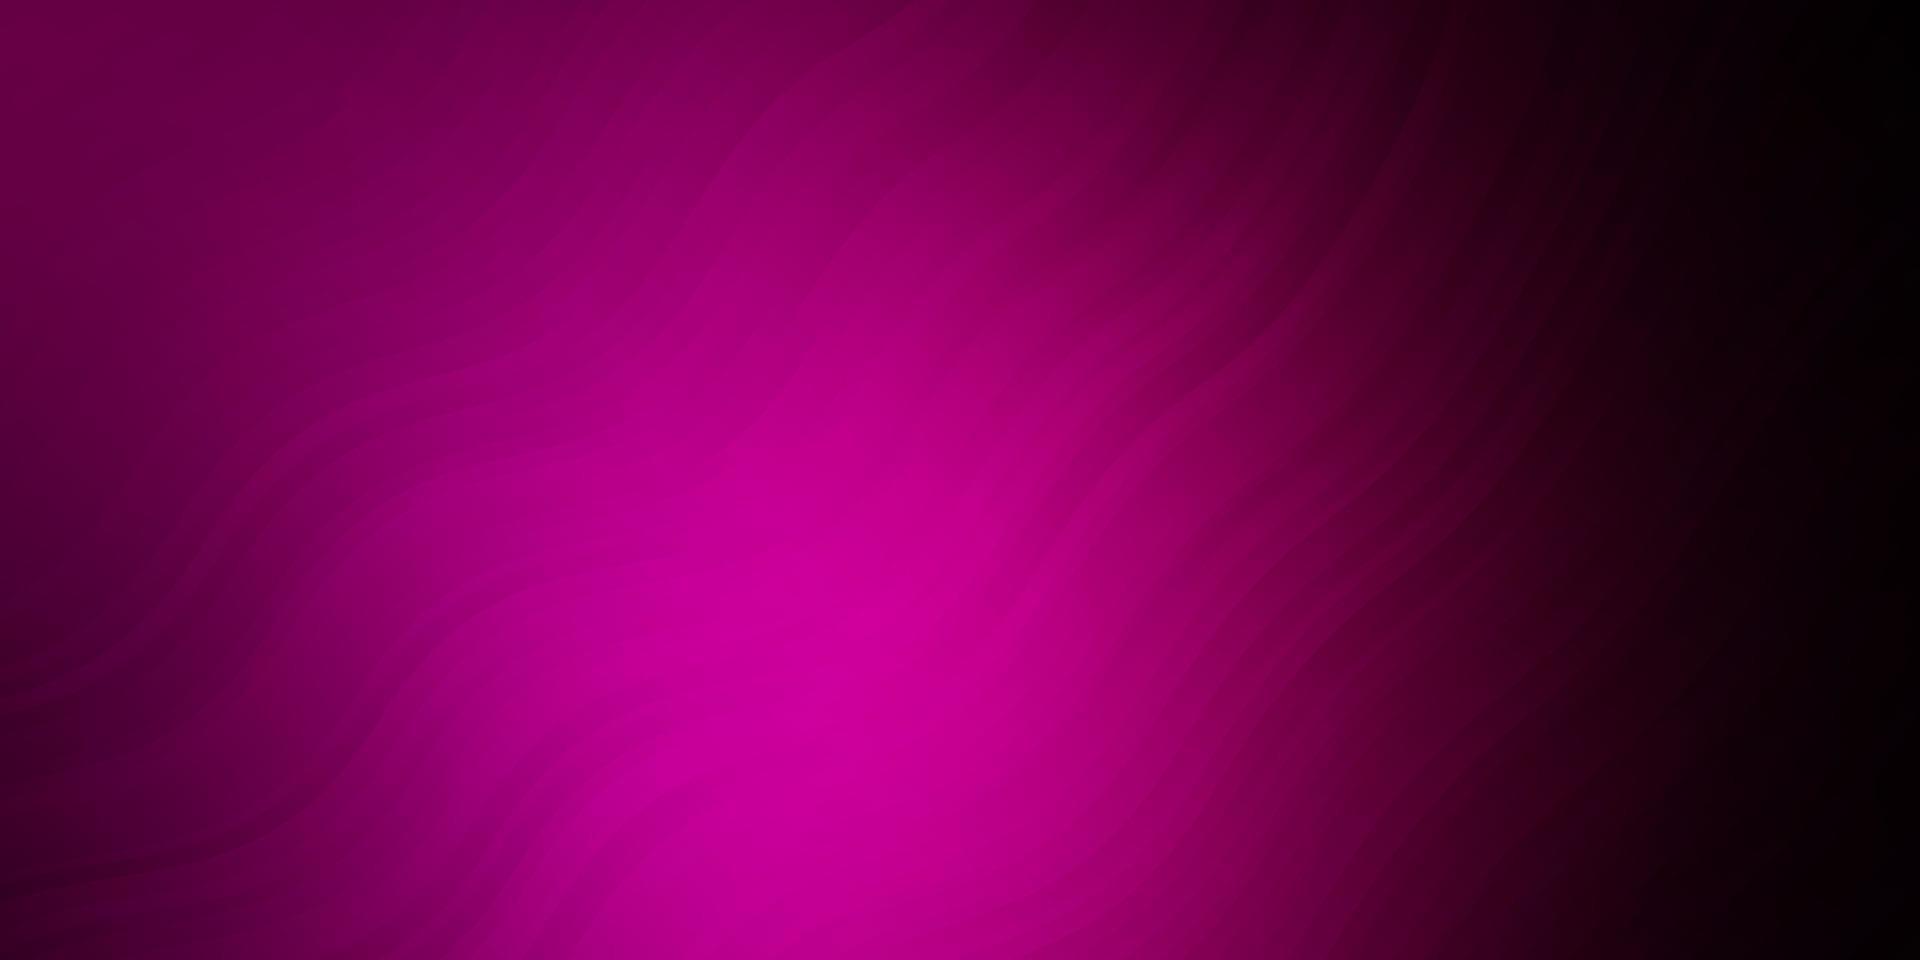 sfondo vettoriale rosa scuro con curve.